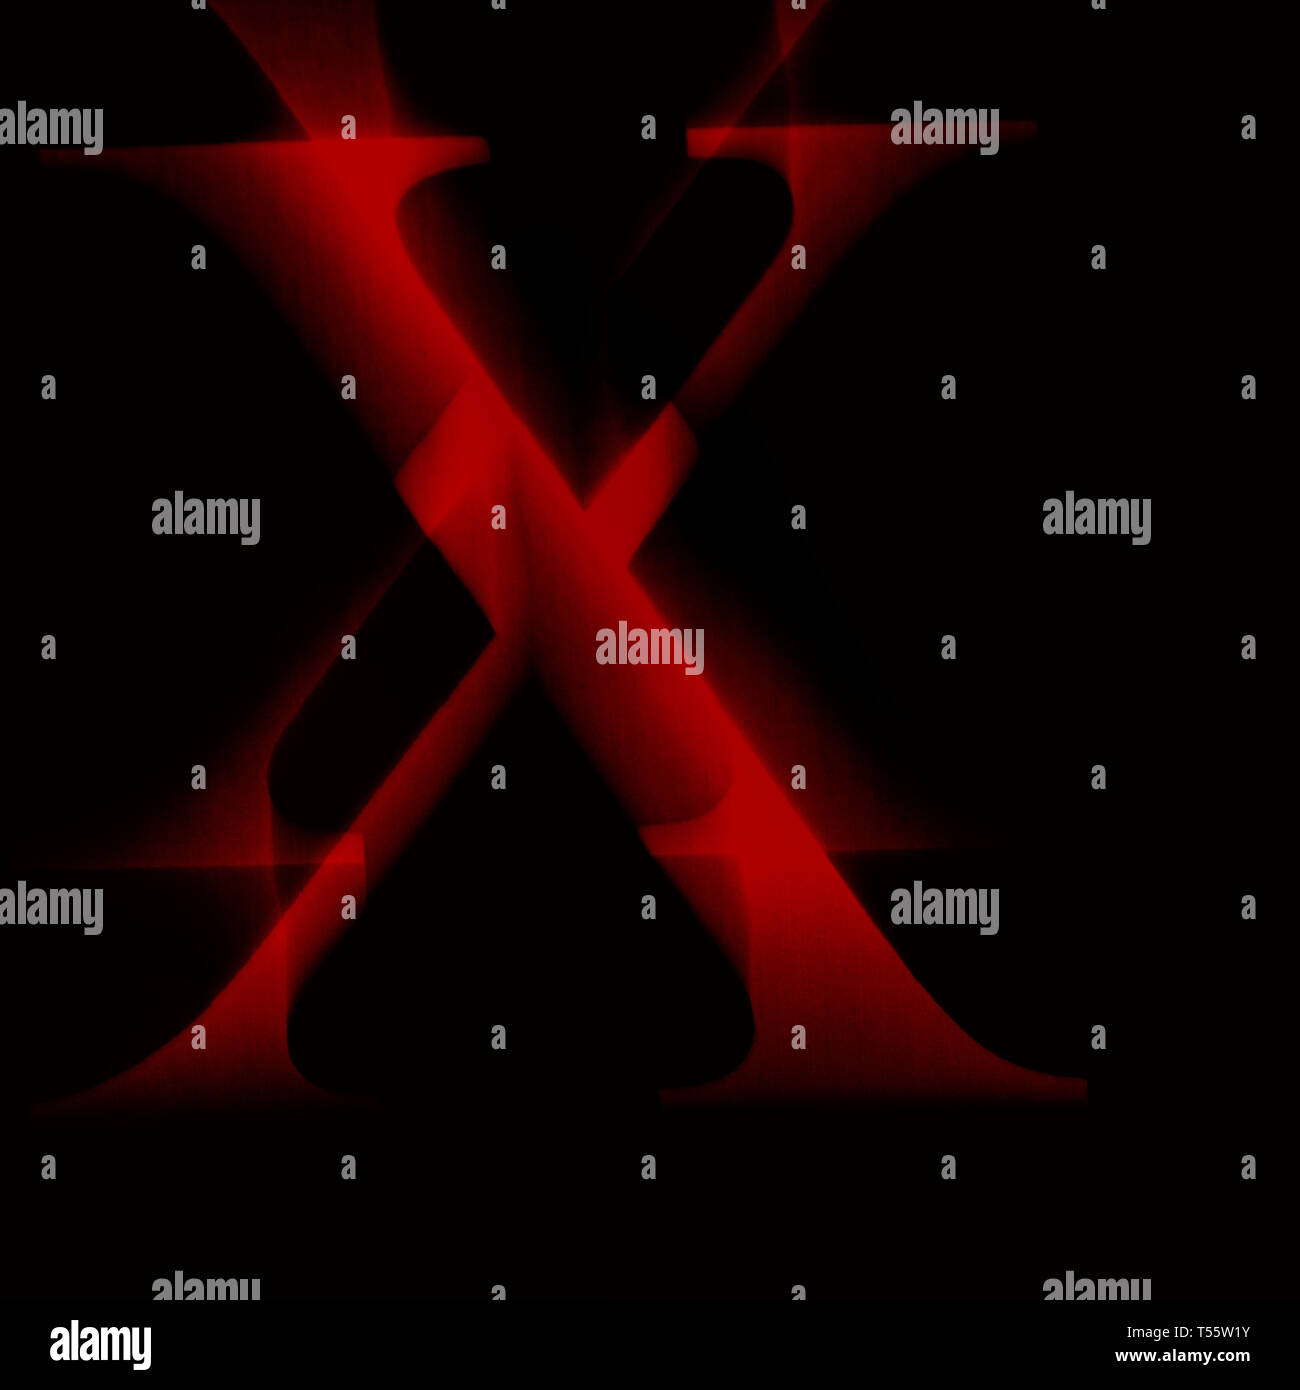 Ilustración de letra X roja con fondo negro Foto de stock